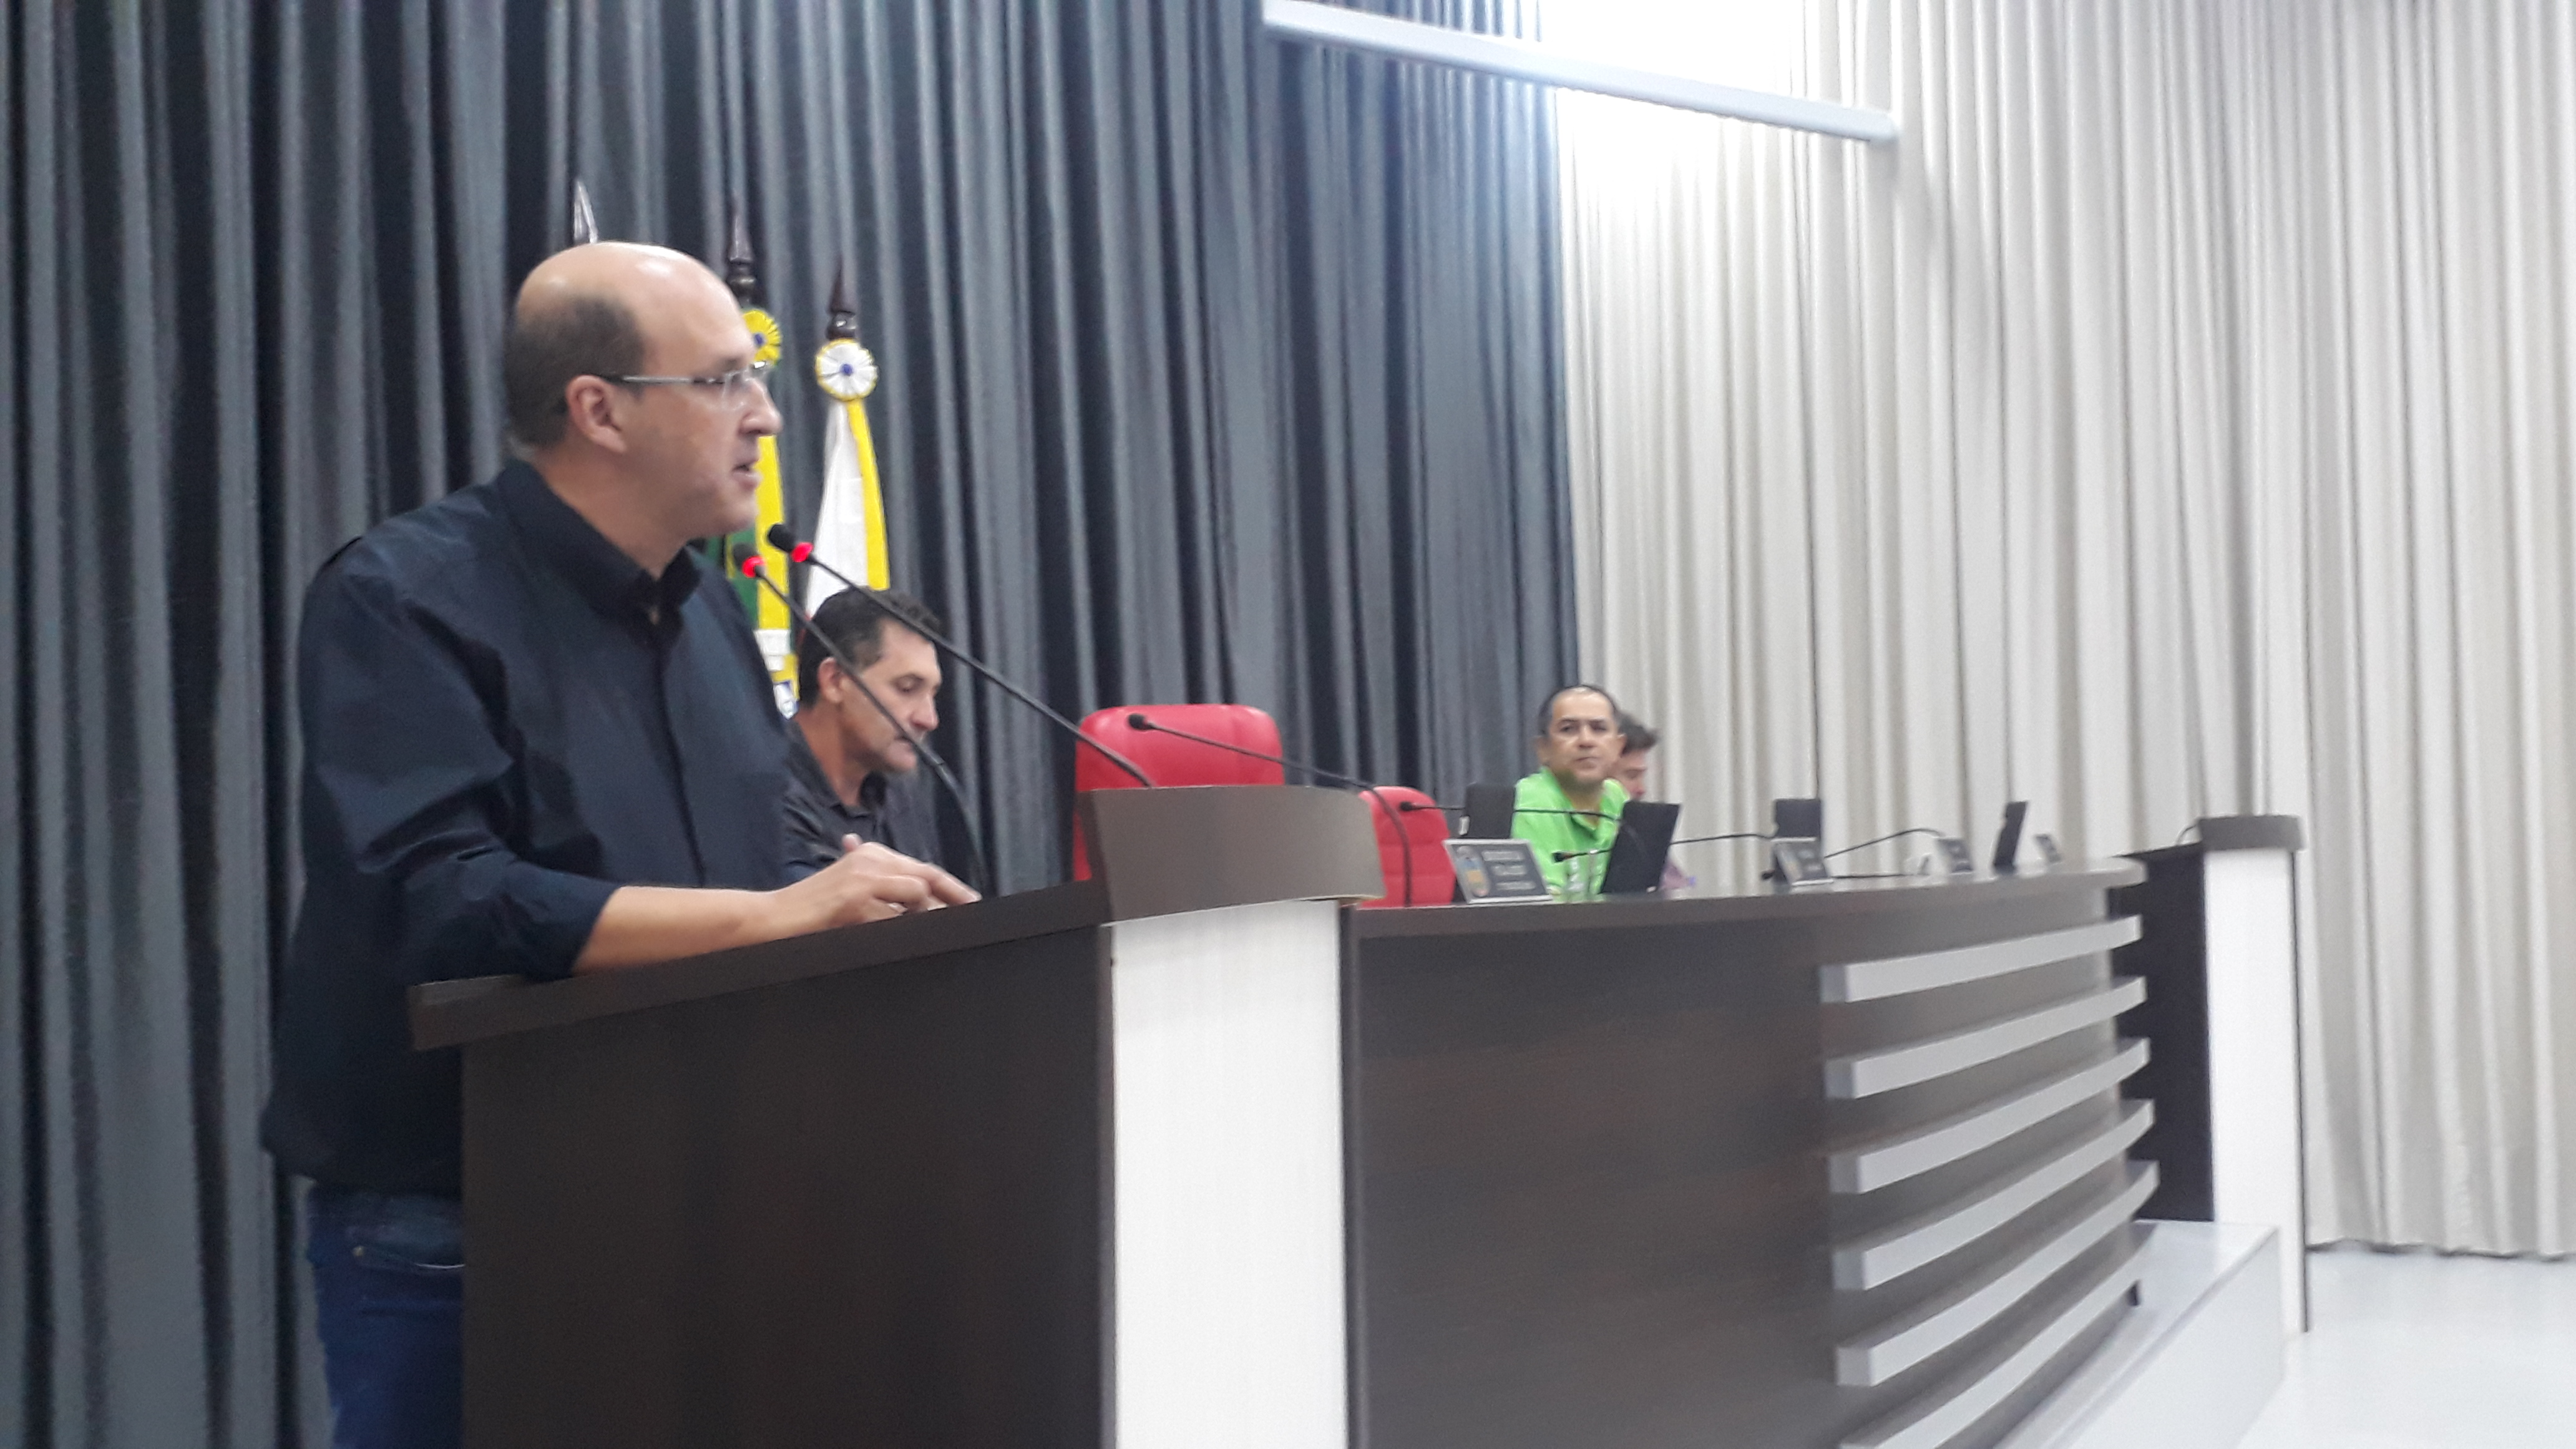 Durante Sessão Ordinária, Molina anuncia devolução de recursos/sobras do Legislativo ao Executivo